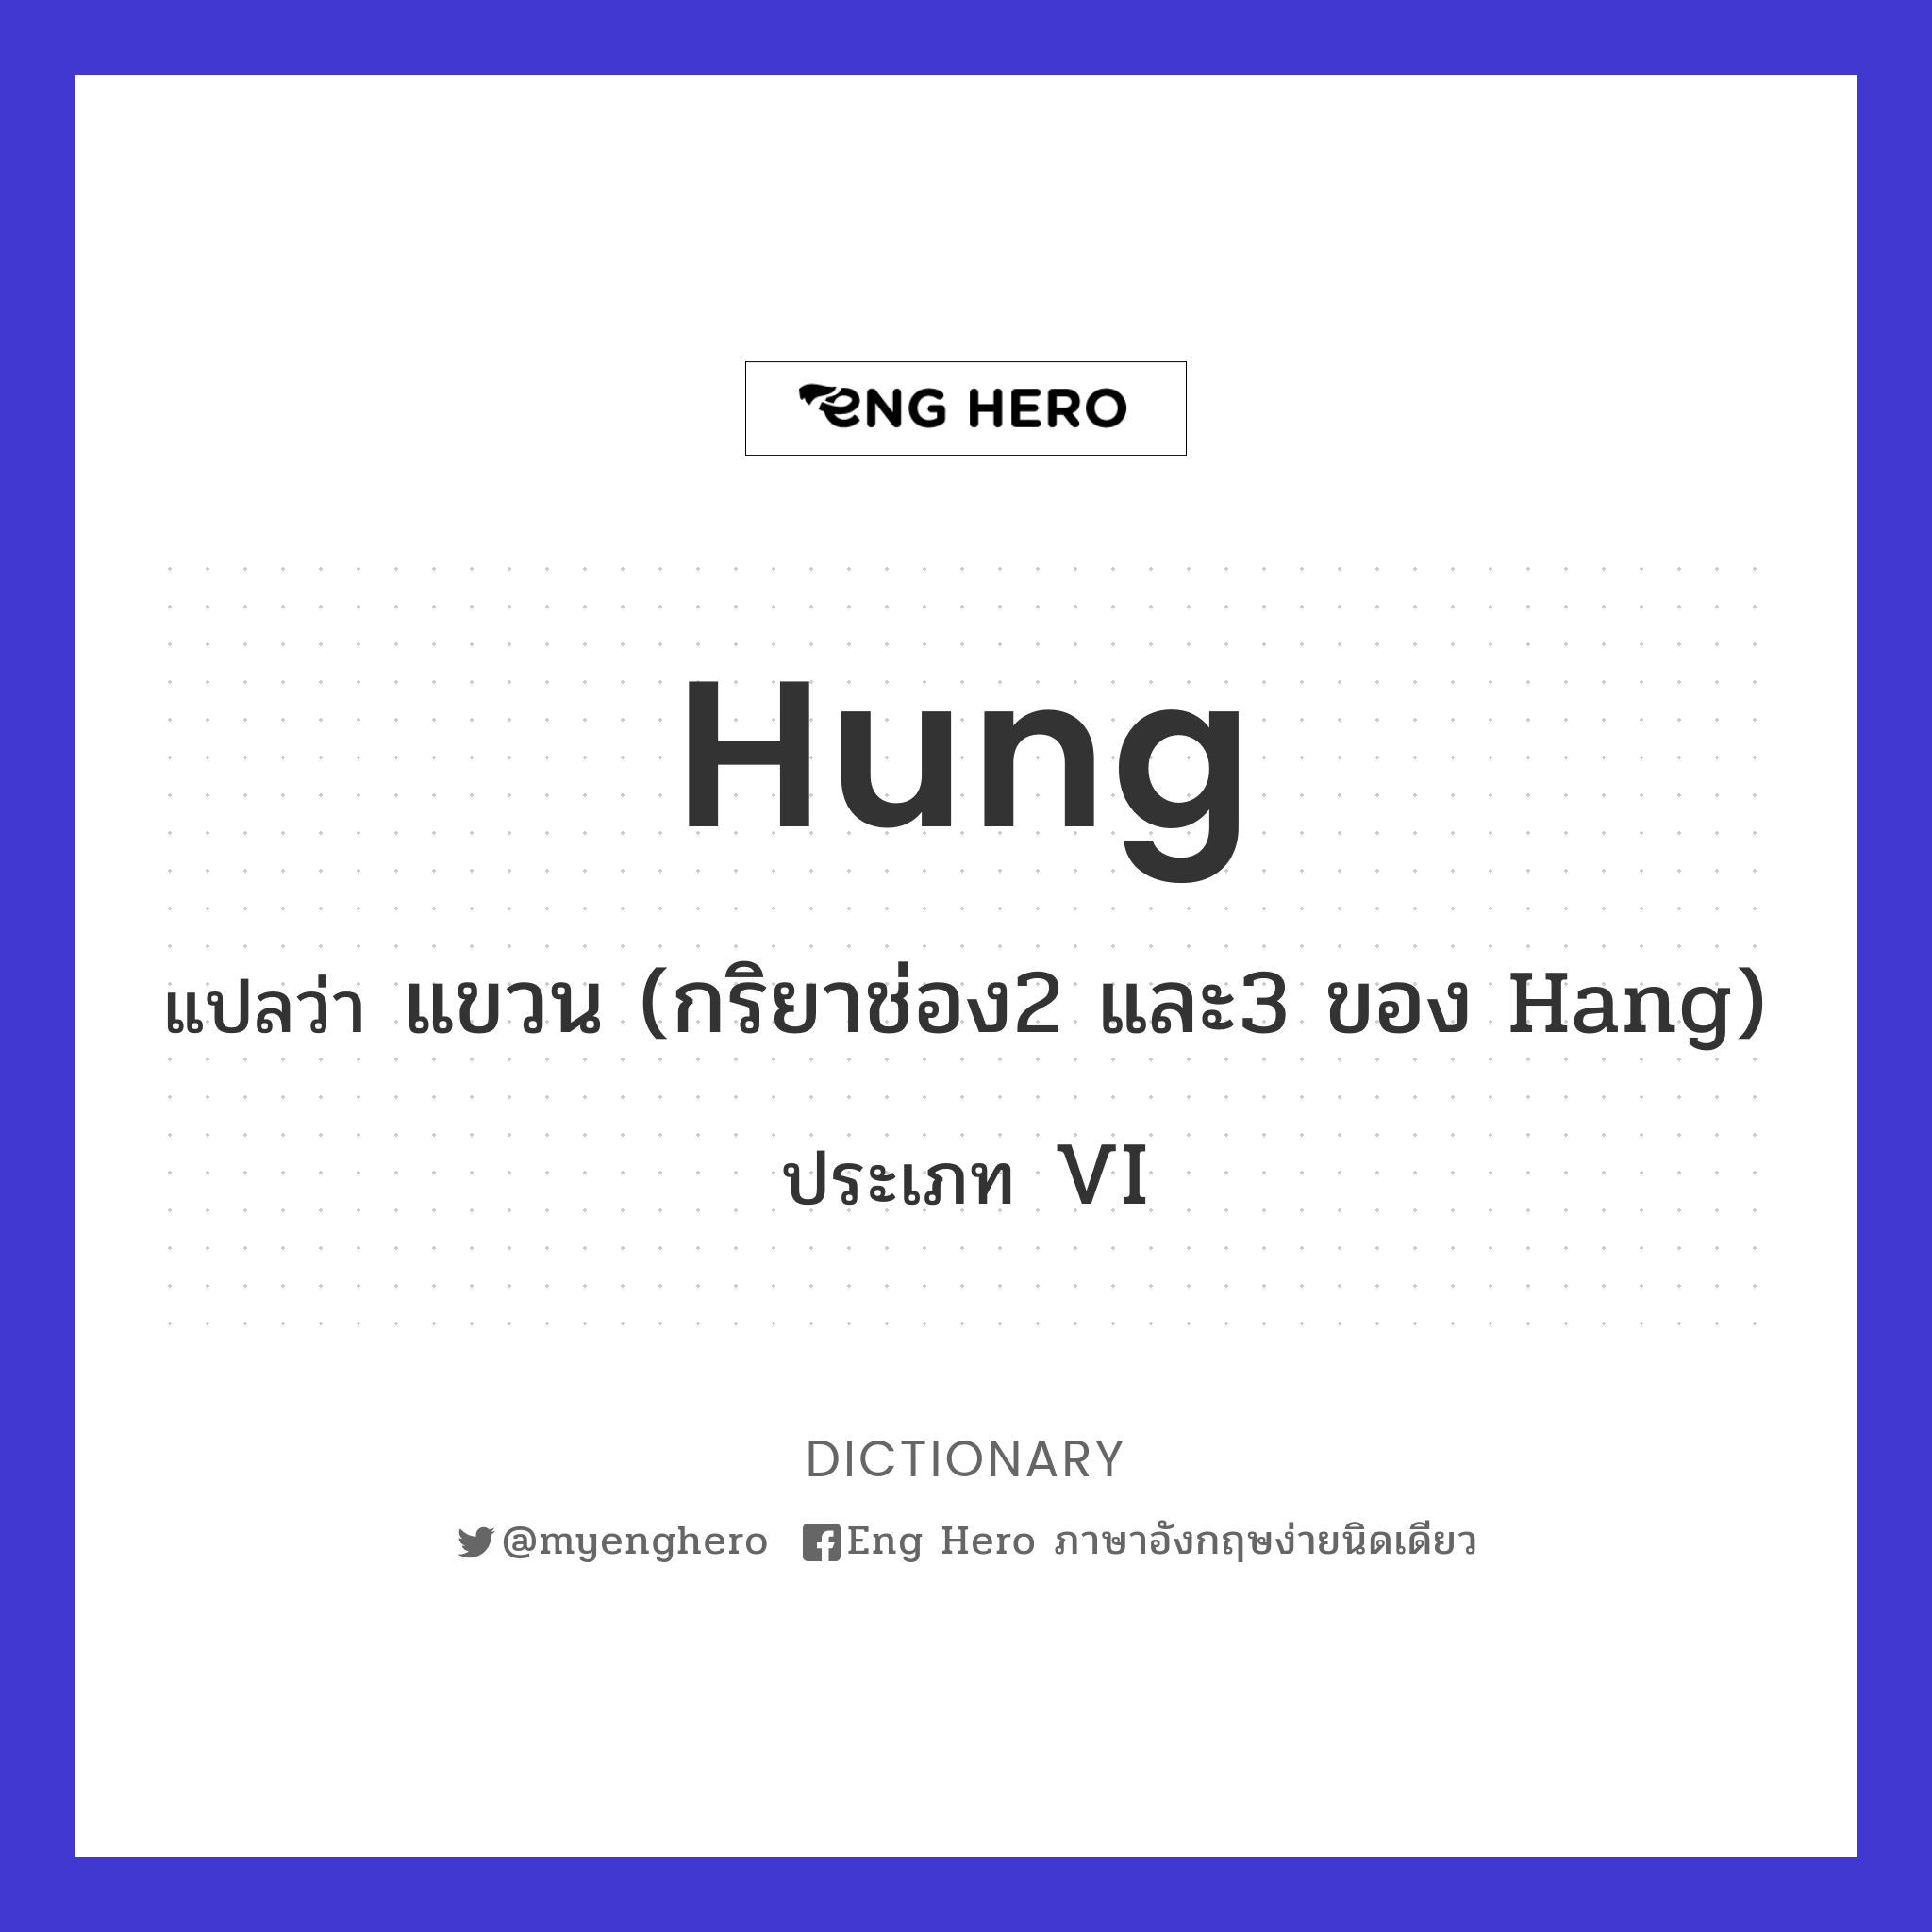 hung